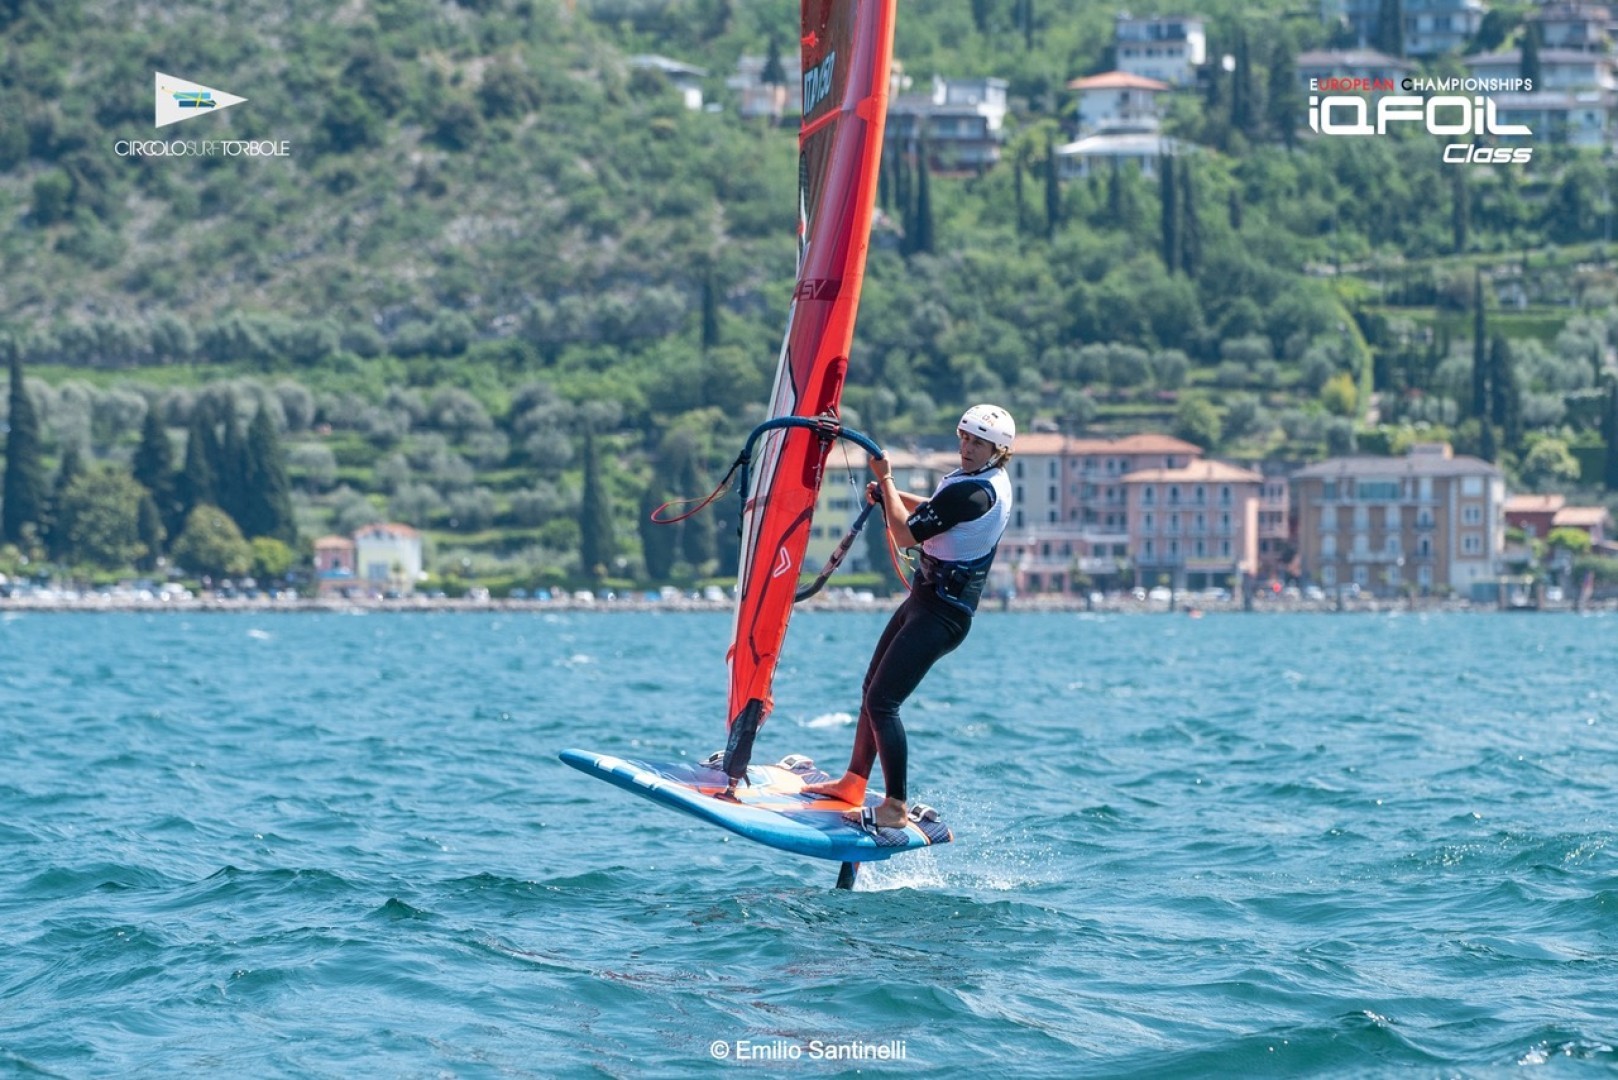 Windsurf Olimpico: Nicolò Renna secondo, in recupero anche gli altri italiani